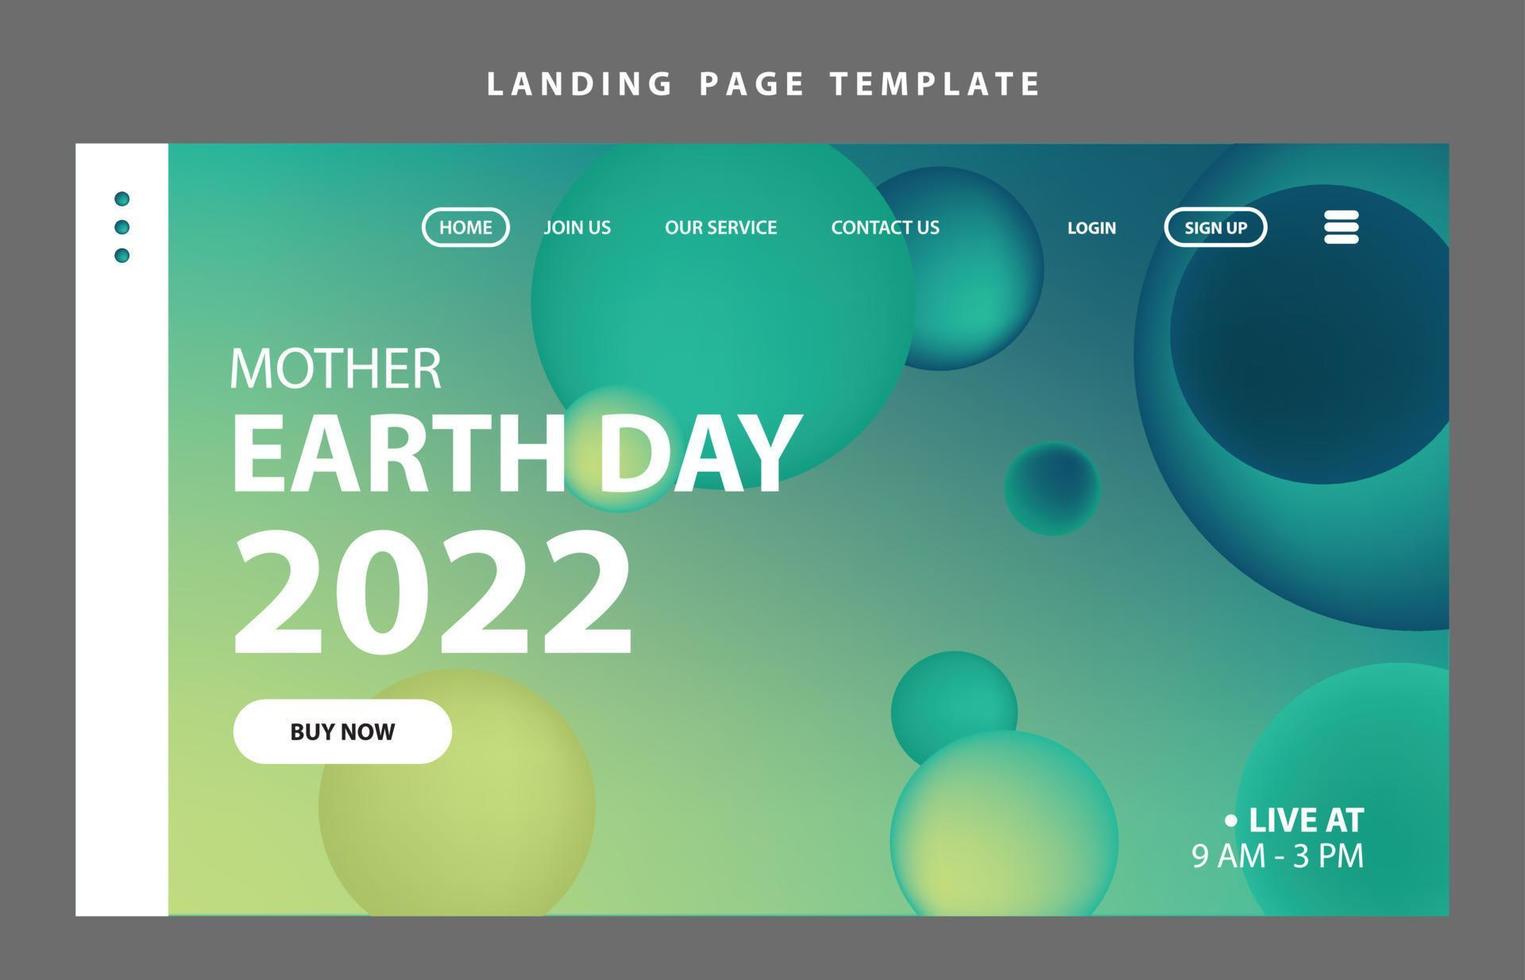 modello di pagina di destinazione presentazione del sito web marketing digitale design piatto evento di avvio giornata della terra vettore